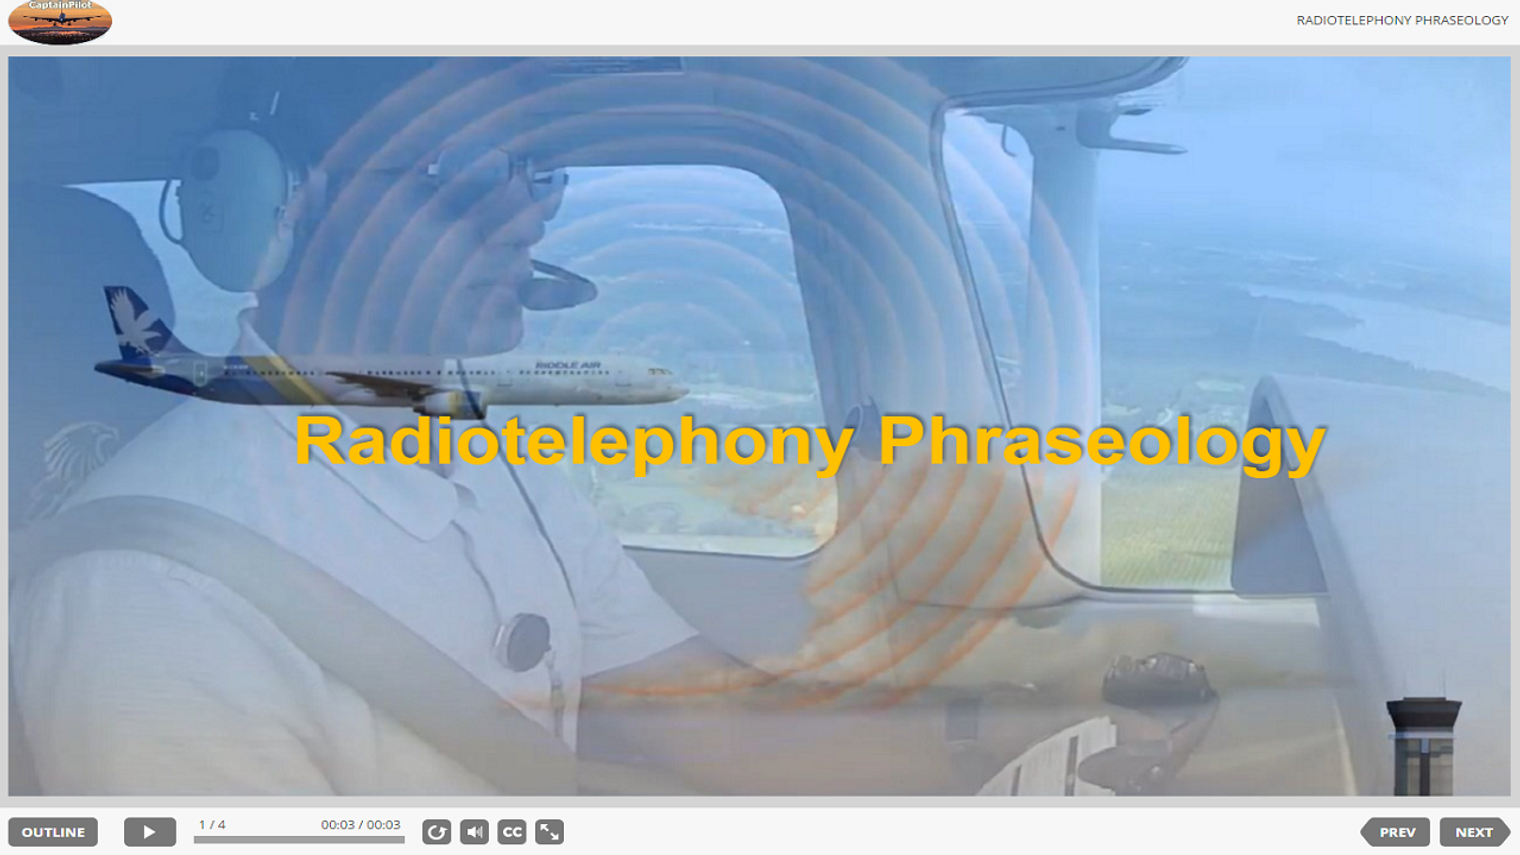 Radiotelephony Phraseology